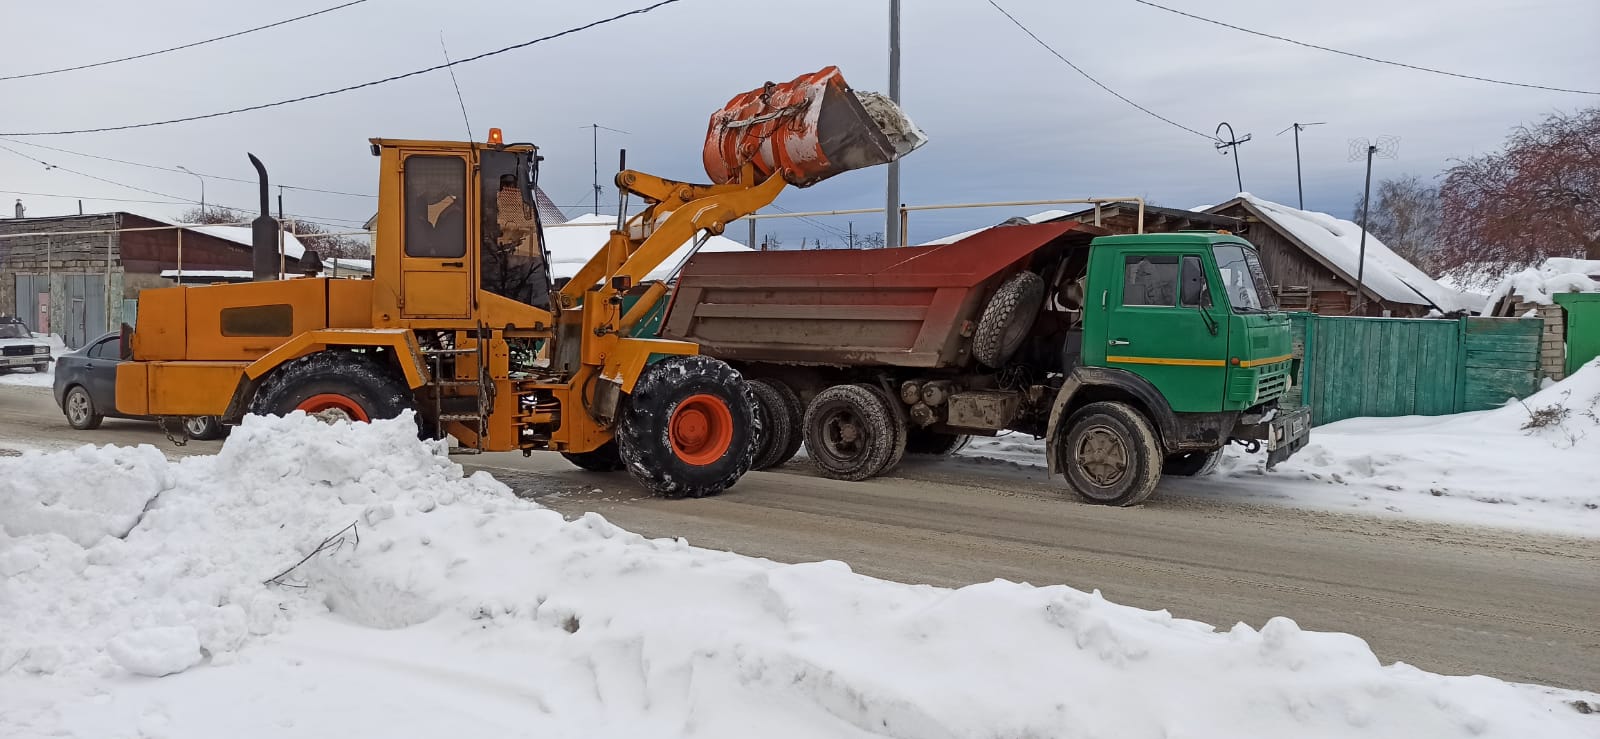 В ночь на 29 ноября на дорогах Барнаула будут работать 142 единицы снегоуборочной техники